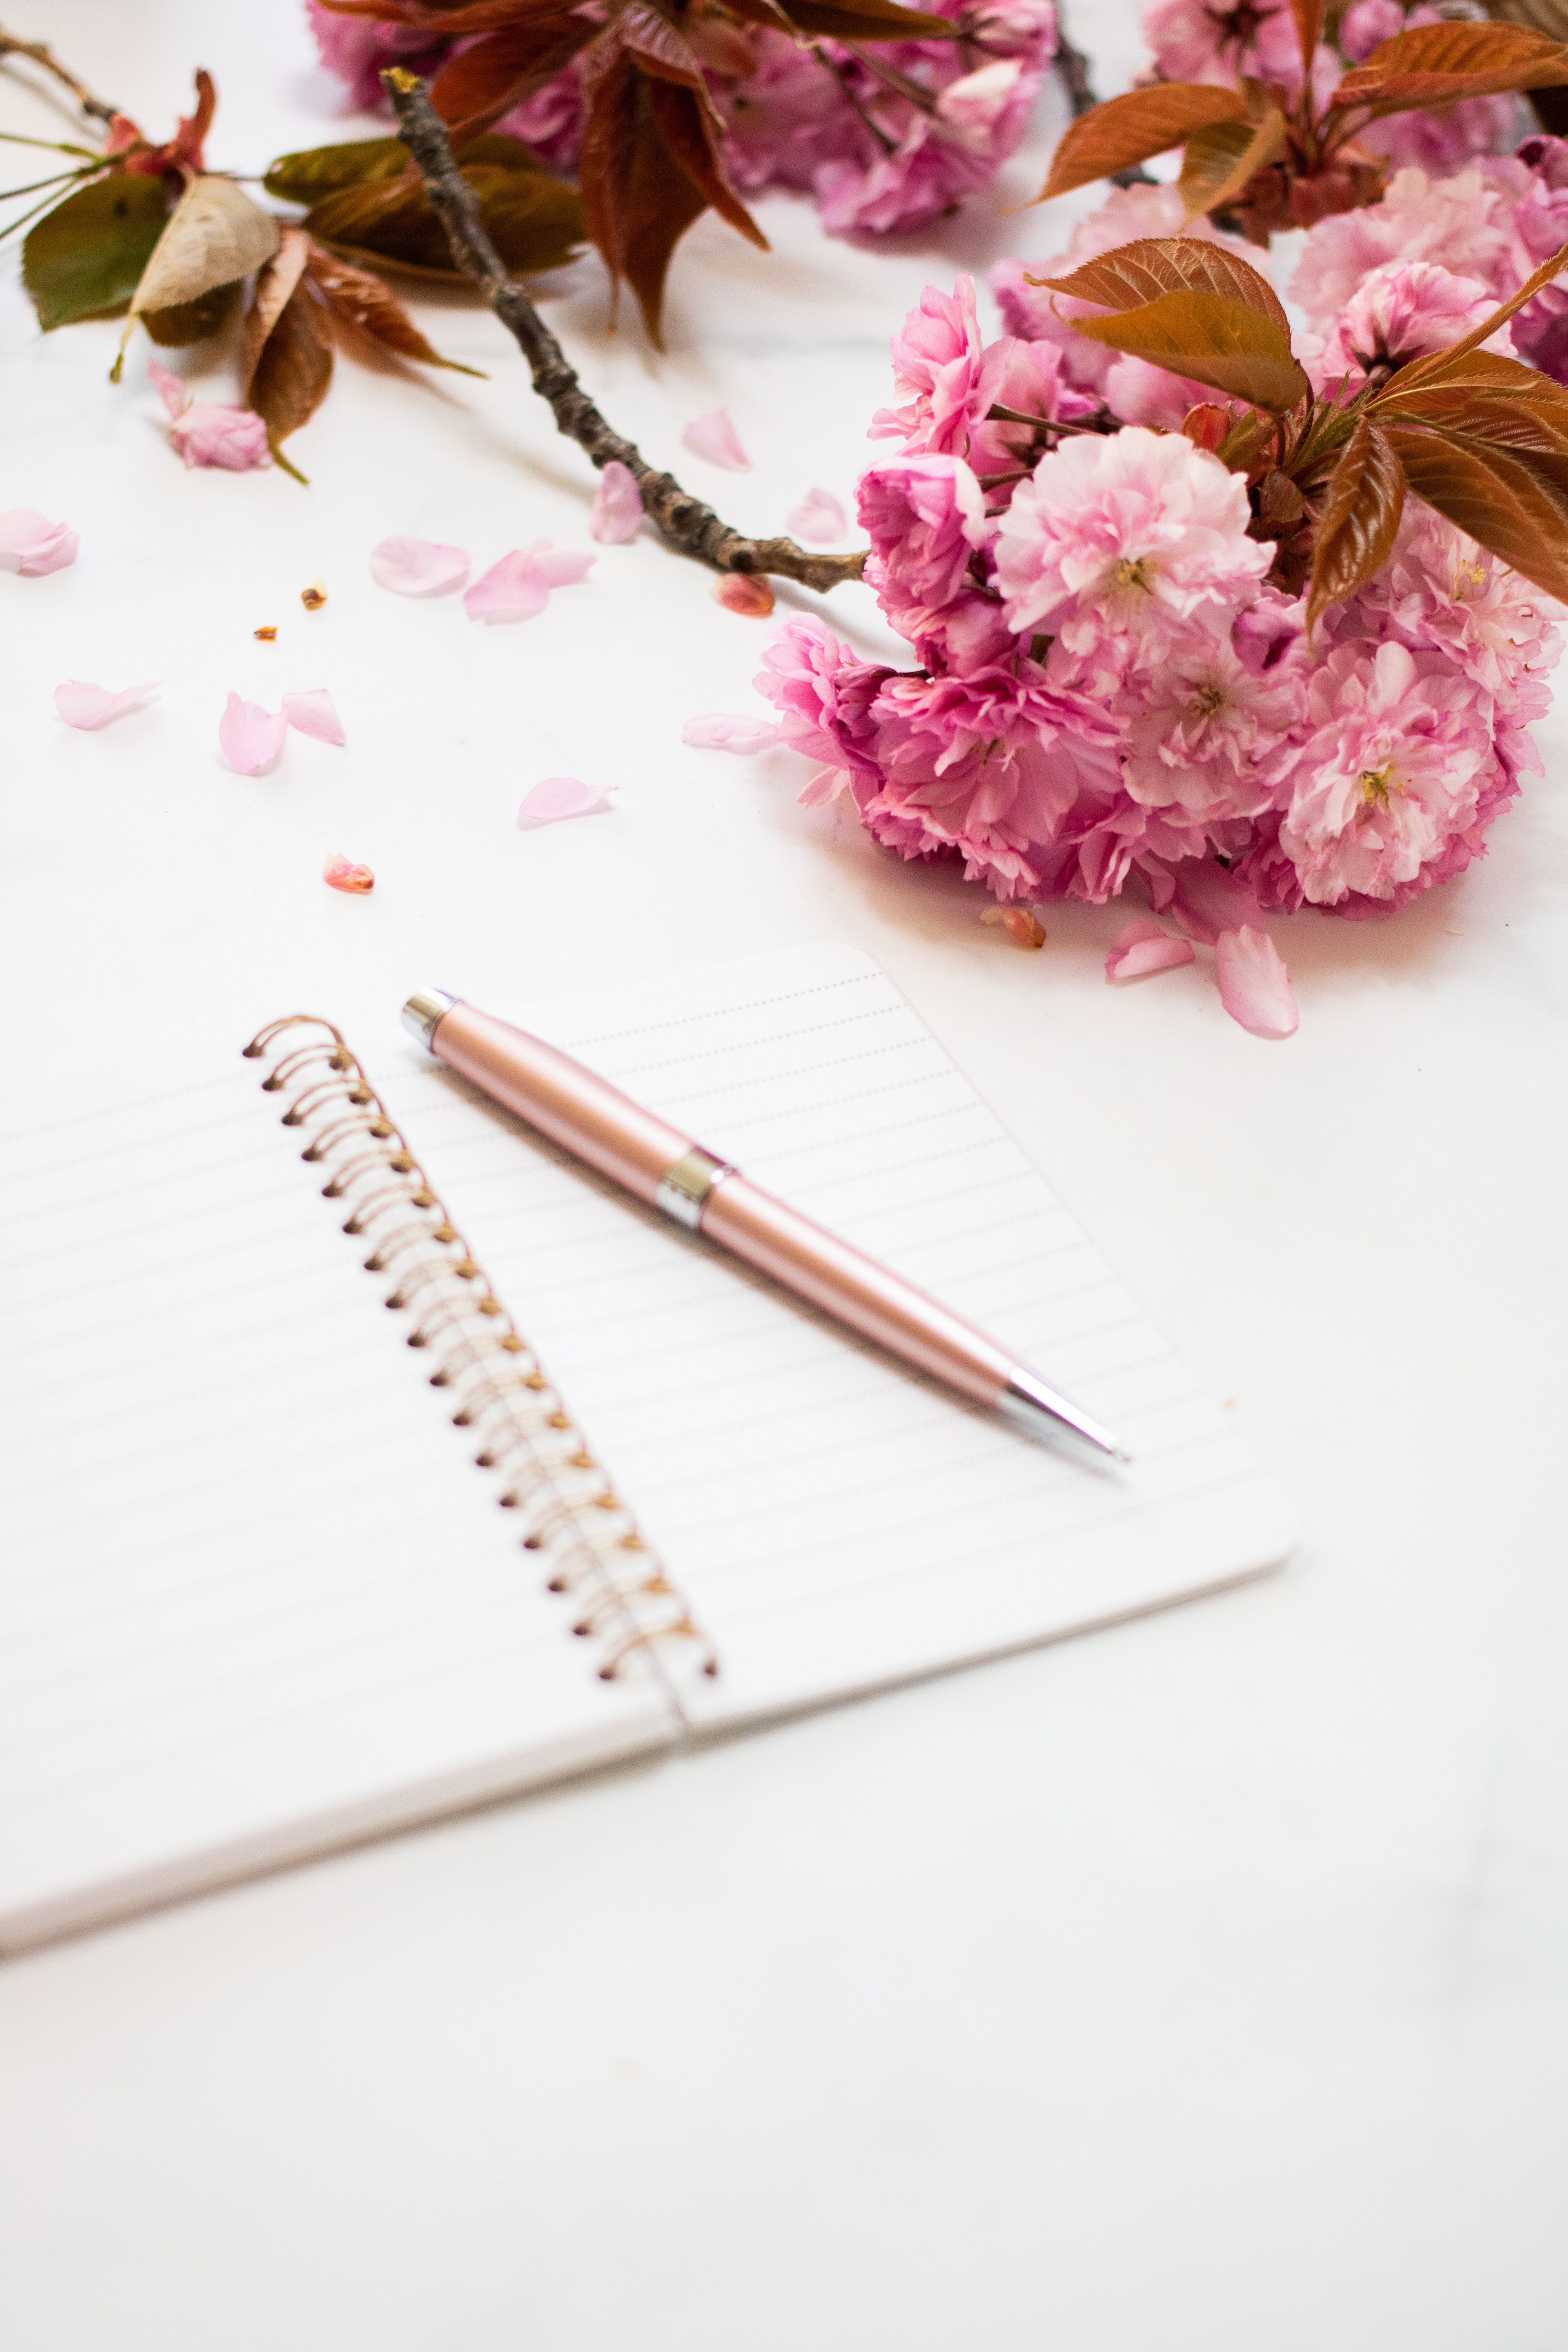 笔记本旁放着粉红色的花朵